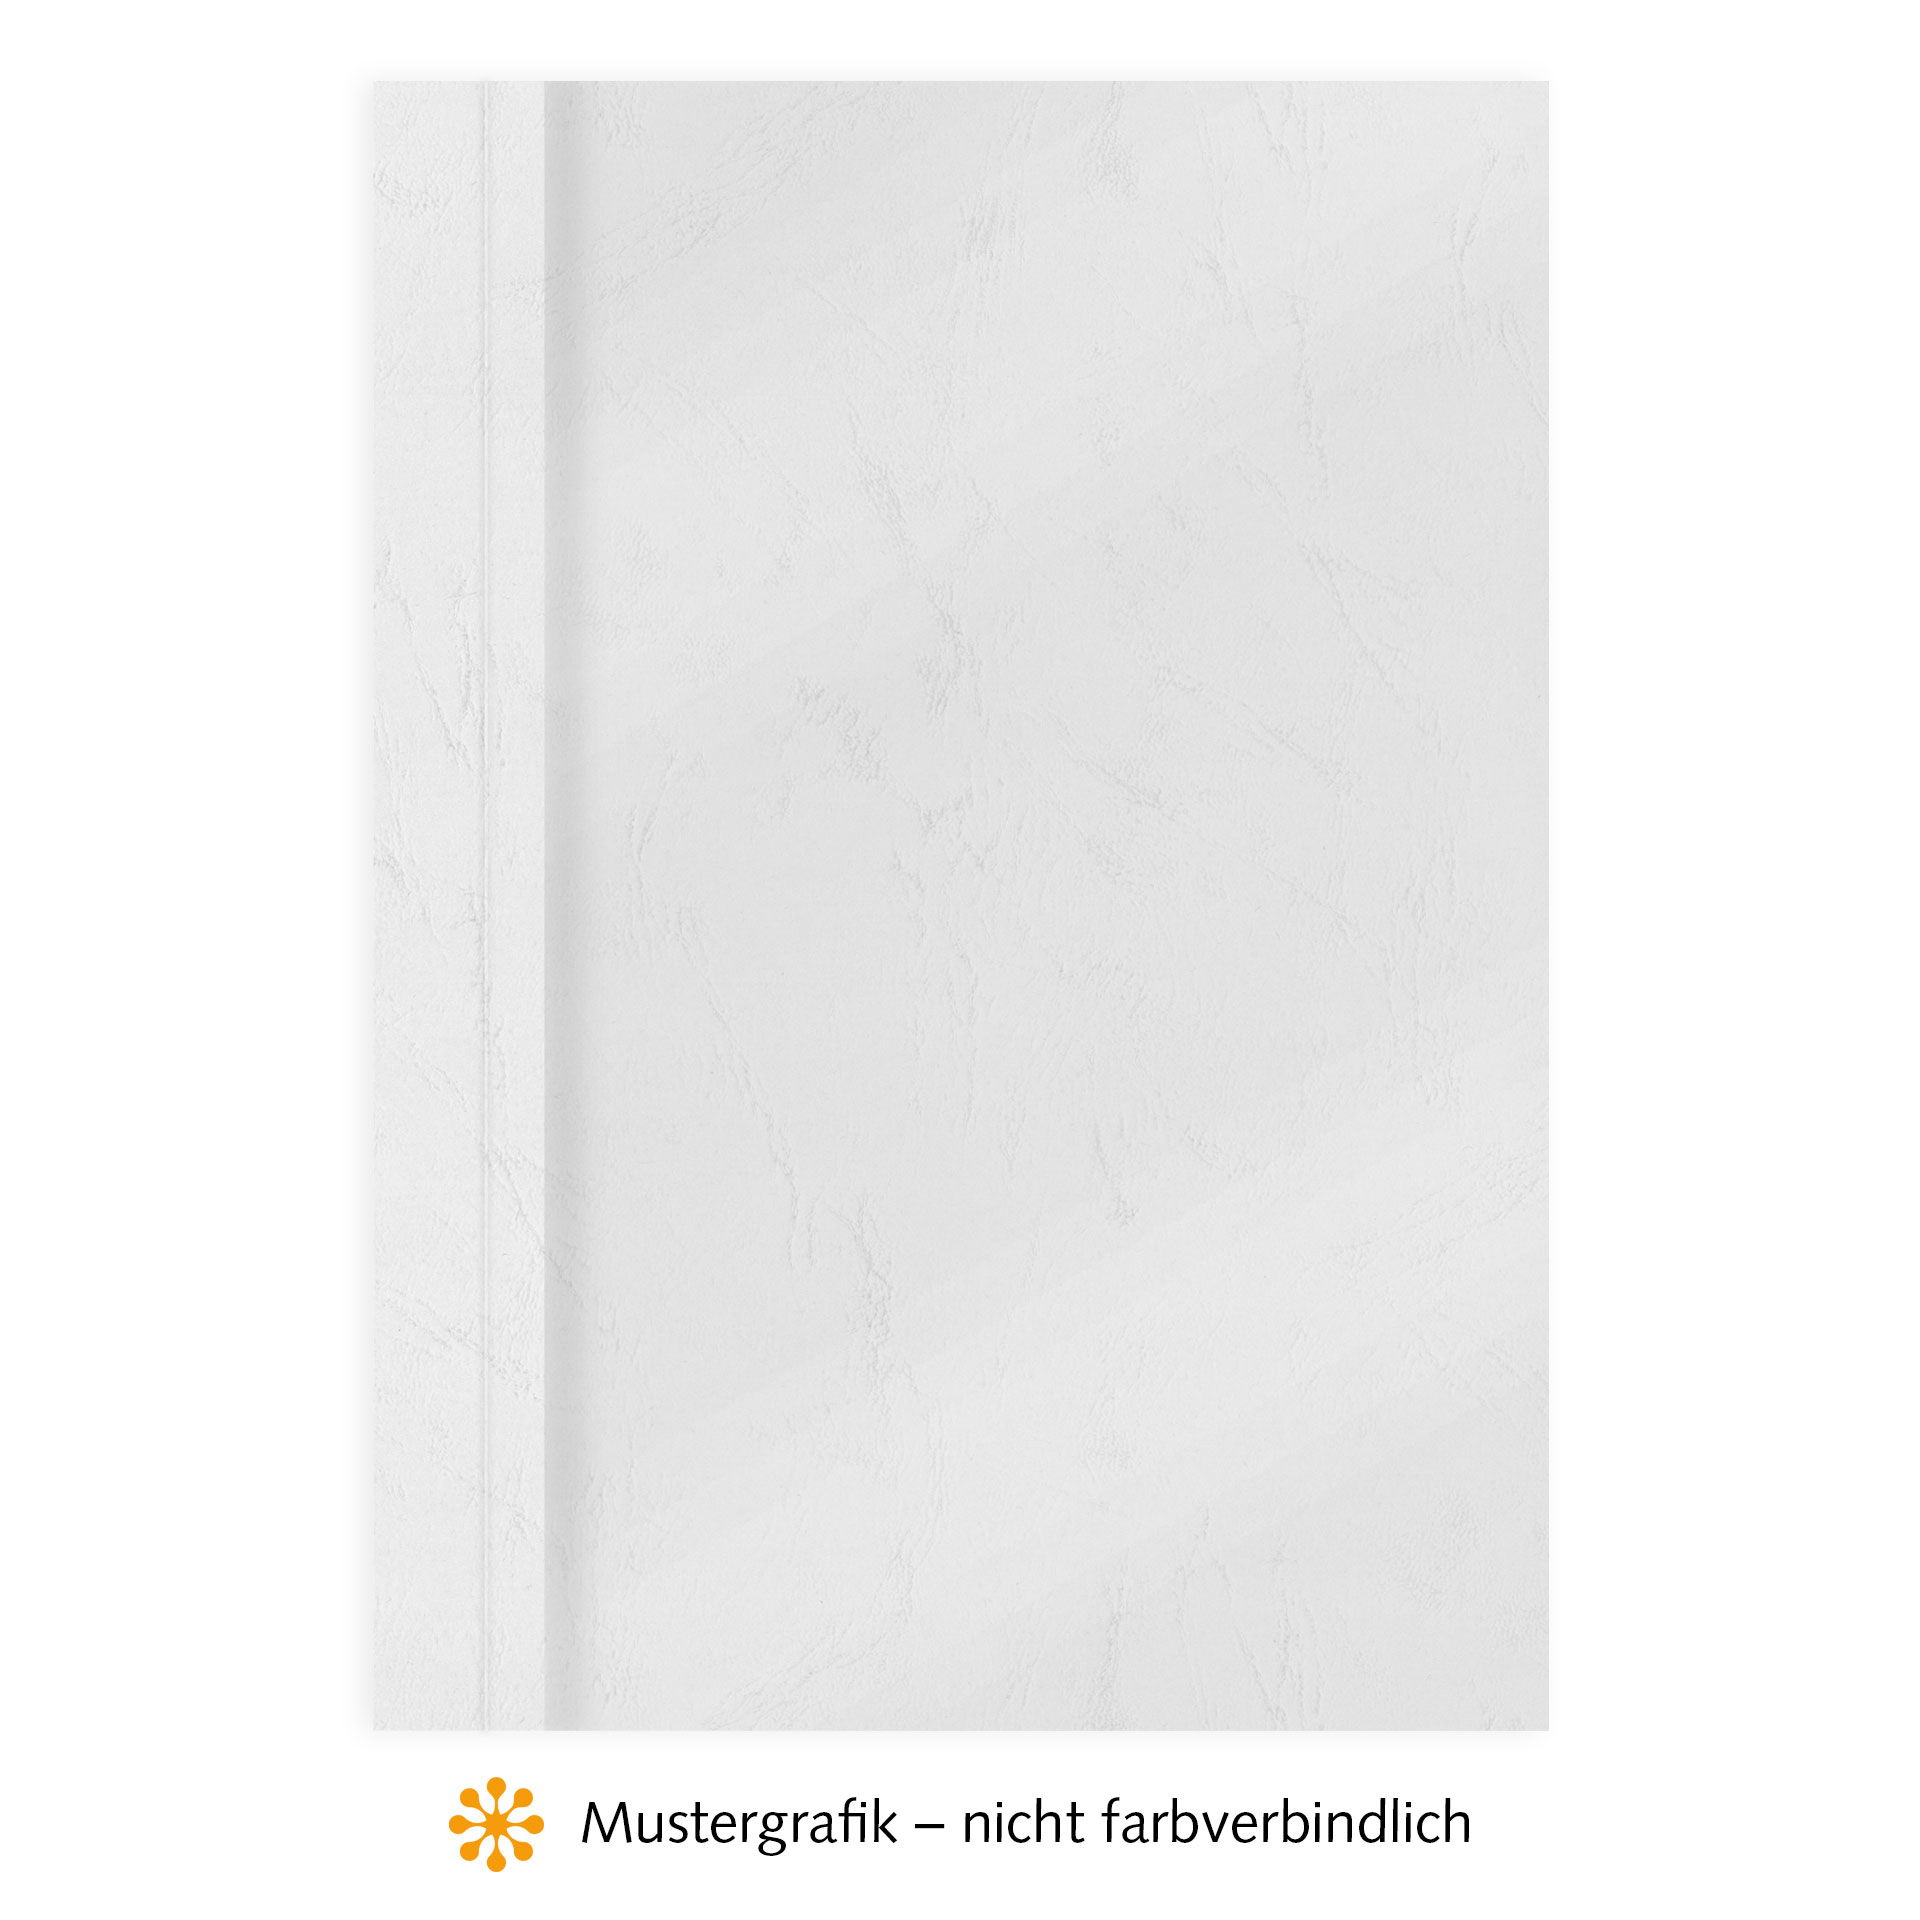 Ösenmappen DUO Cover, Vorderseite Folie MATT transparent, Rückseite Karton Leder, Weiß, 15 mm, 141 bis 150 Blatt